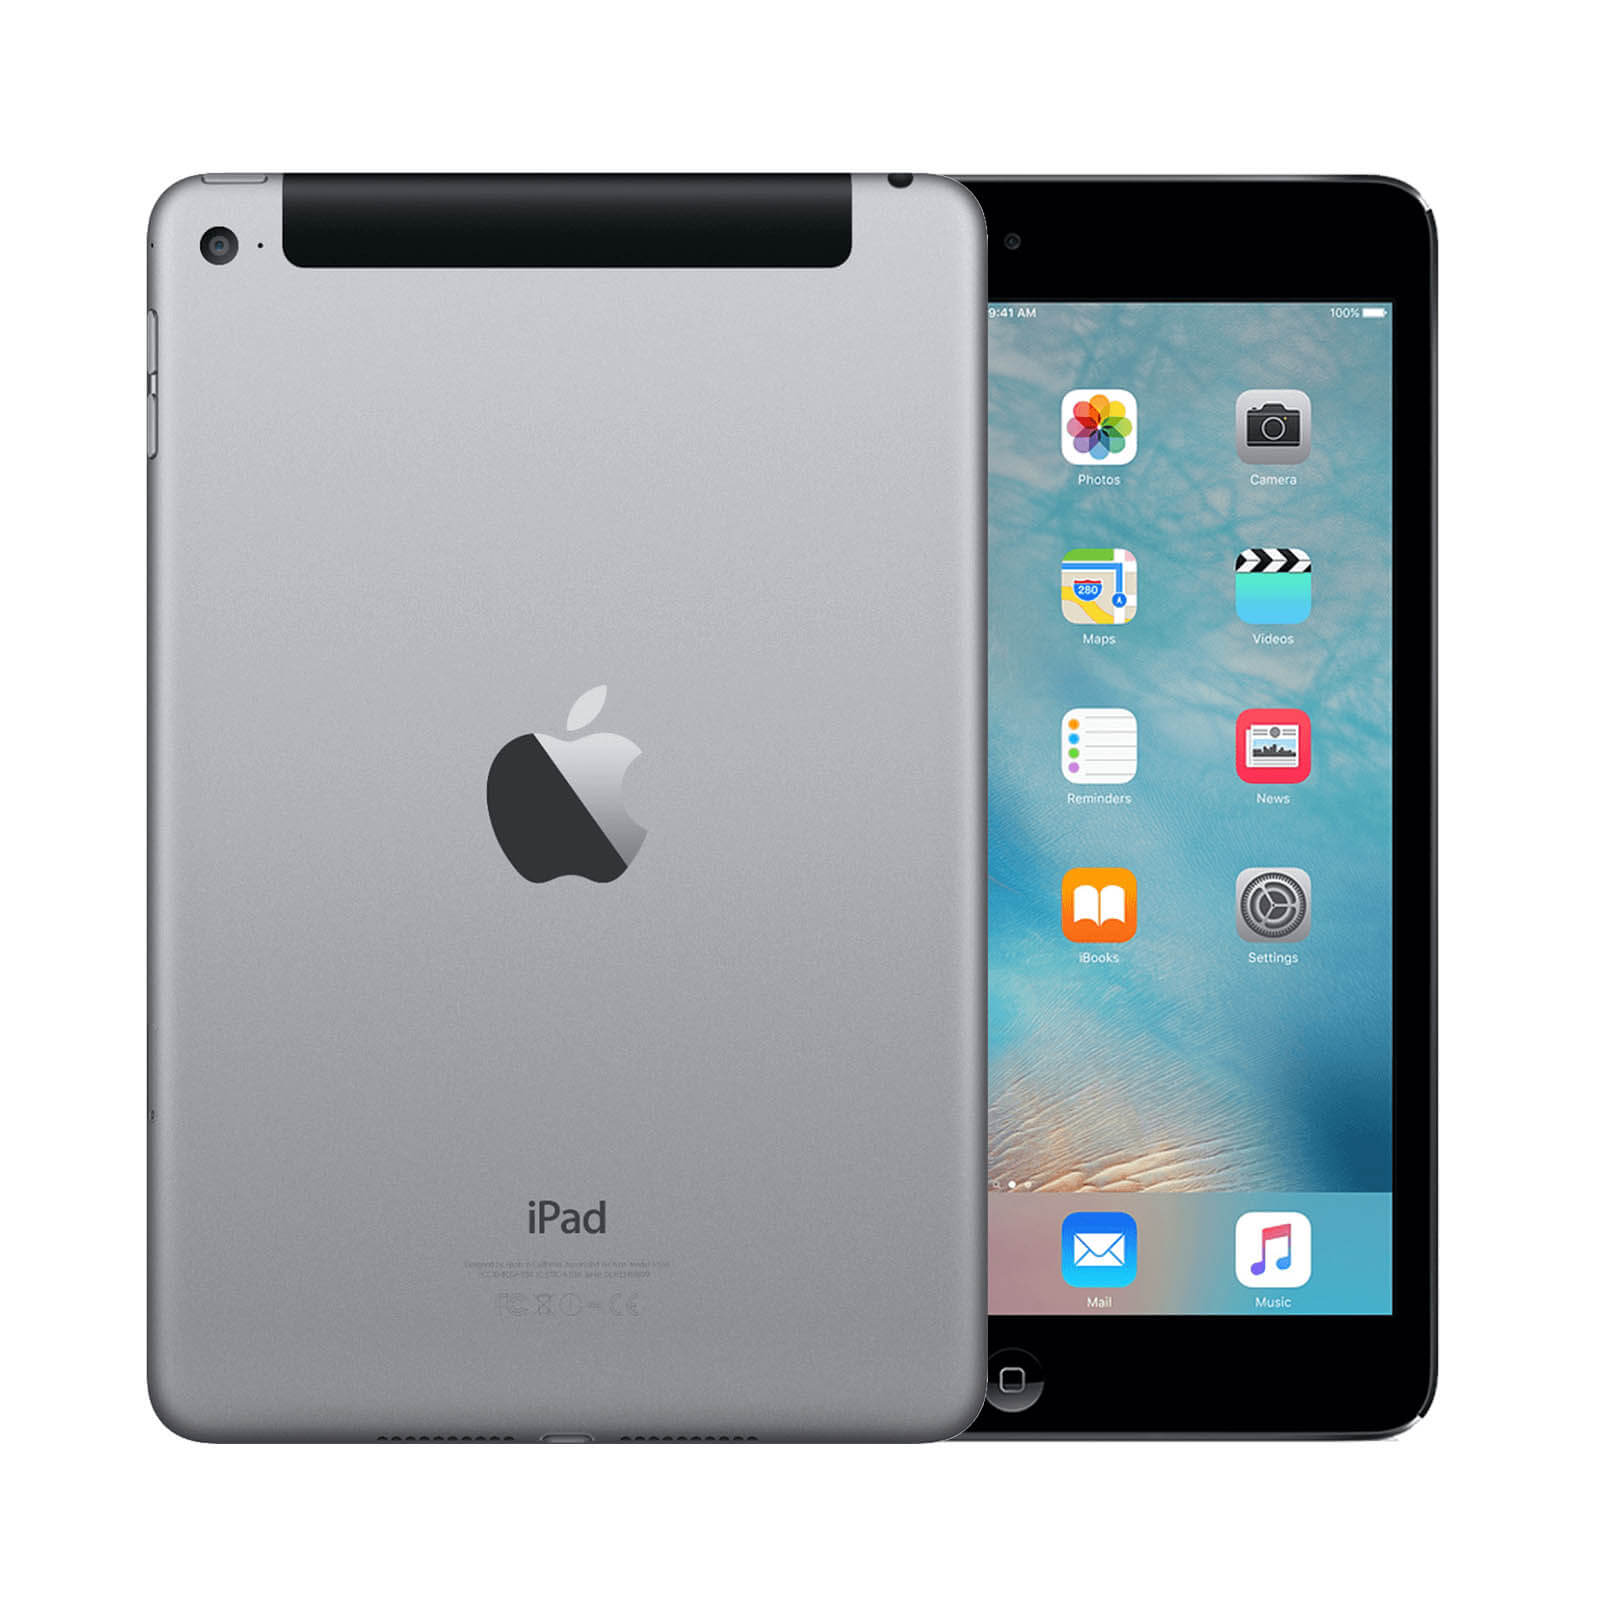 Apple iPad Mini 4 128GB Space Grey WiFi & Cellular - Very Good